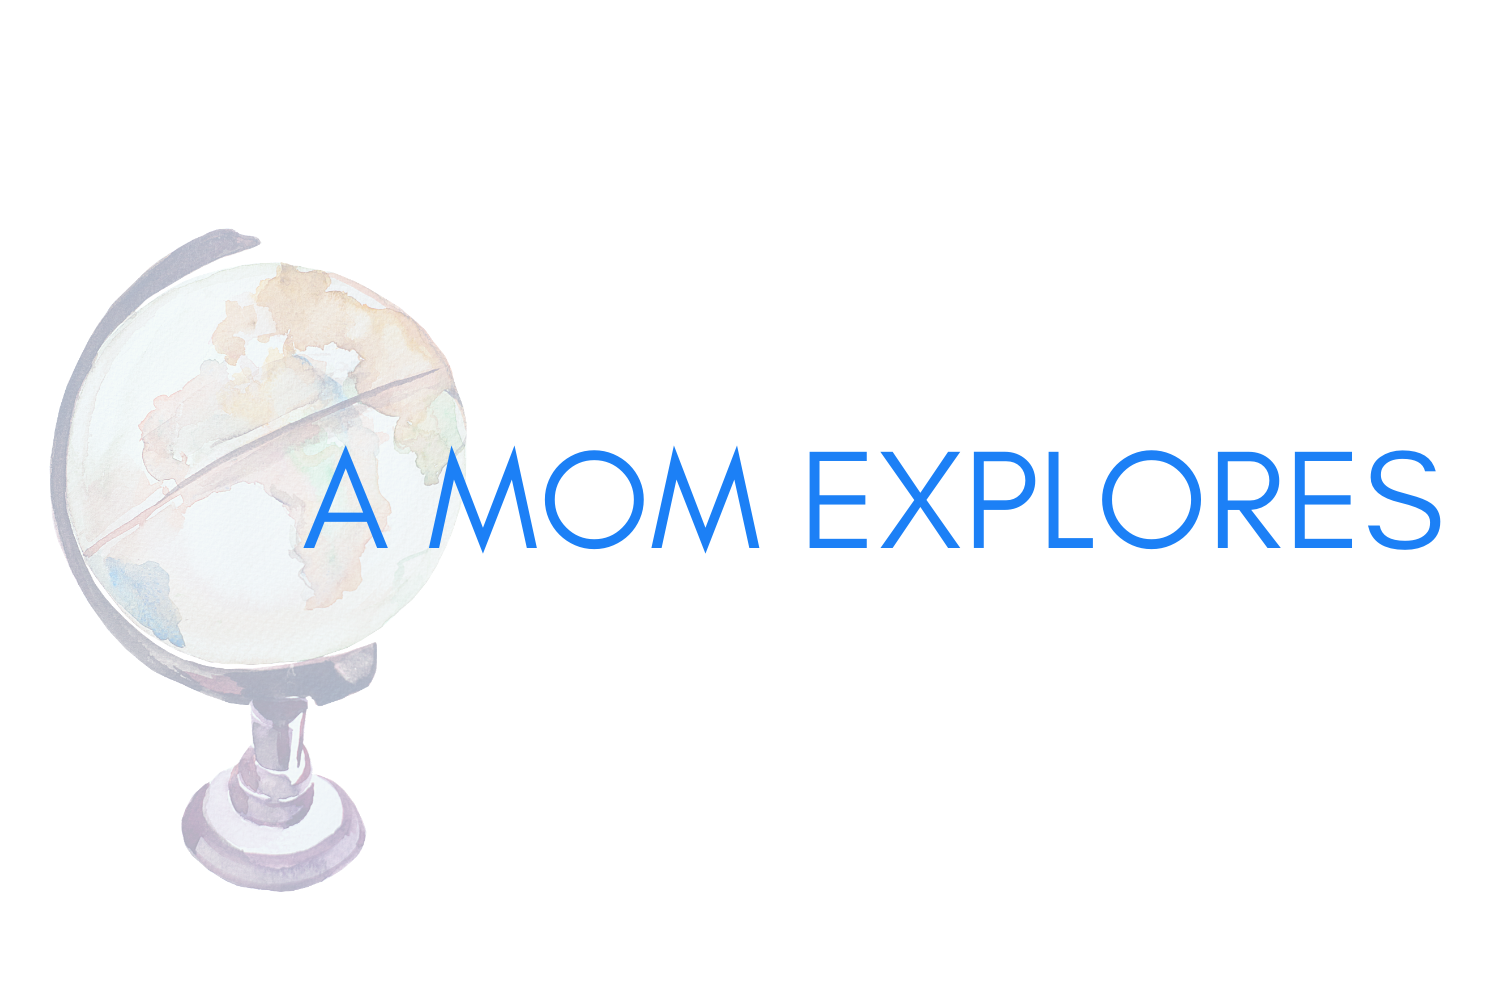 Mom's explorer